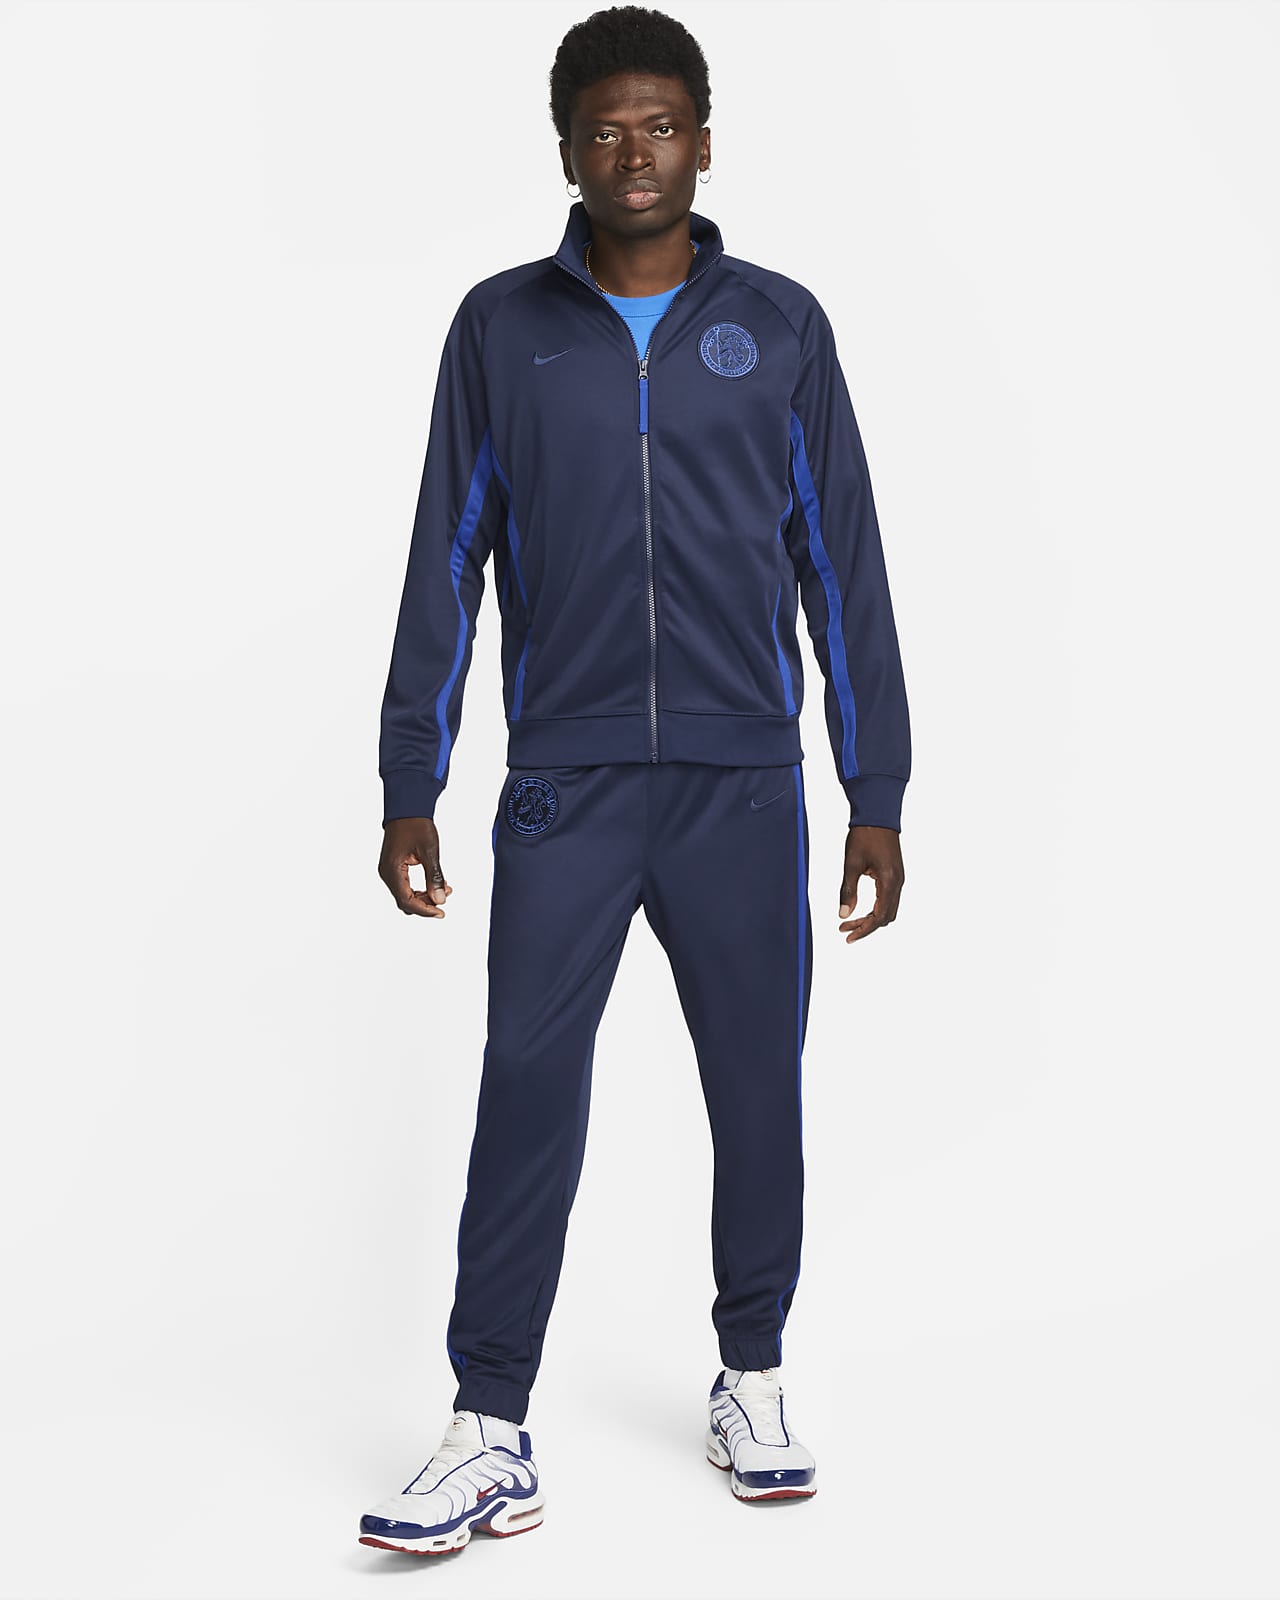 Chelsea FC Men's Jacket. Nike SA